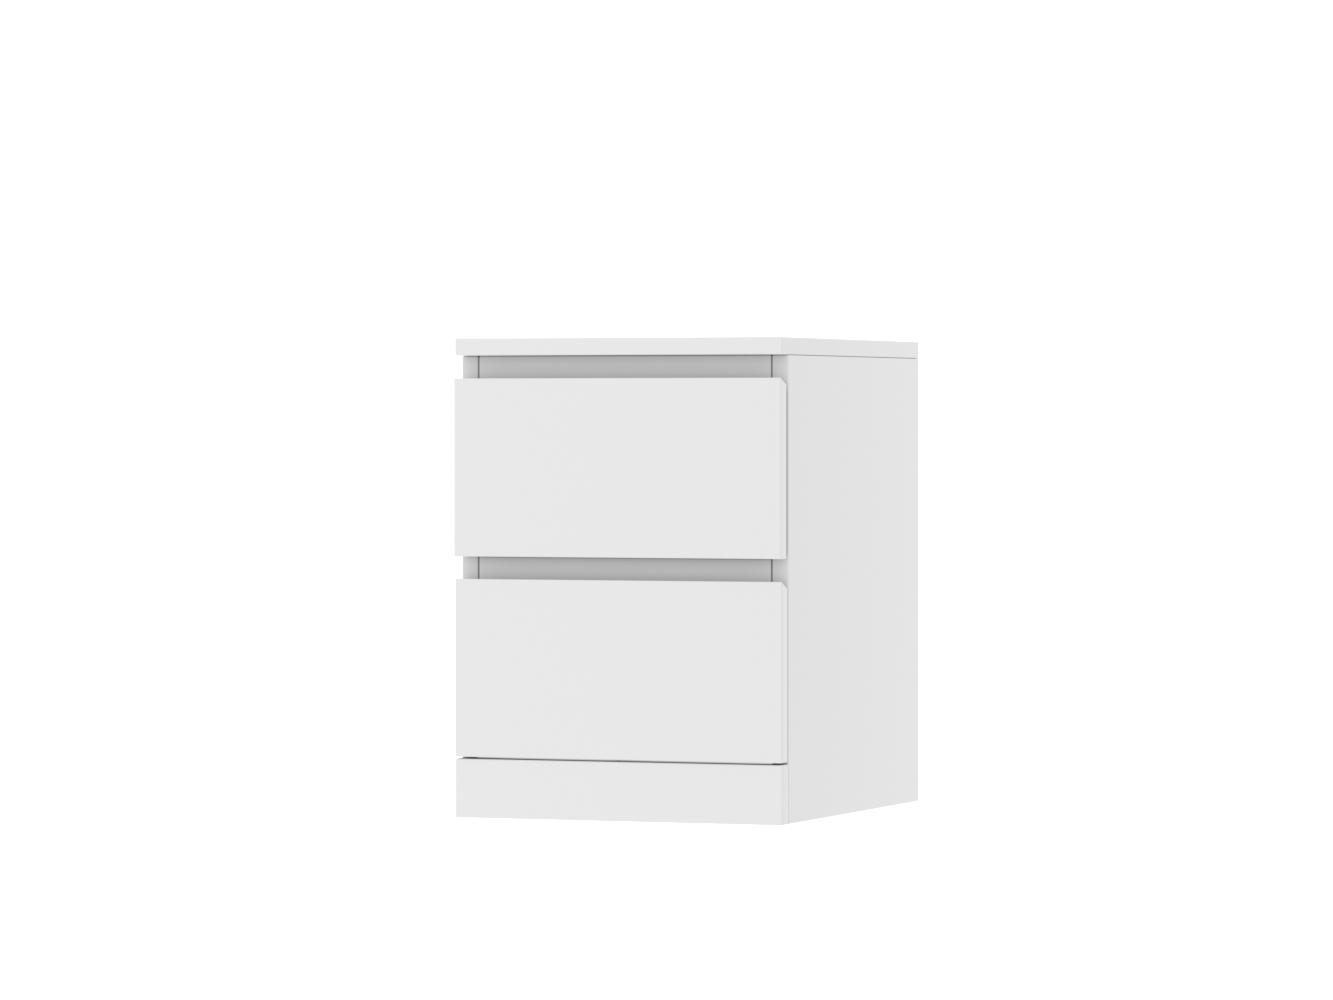  Прикроватная тумба Мальм 113 white ИКЕА (IKEA) изображение товара